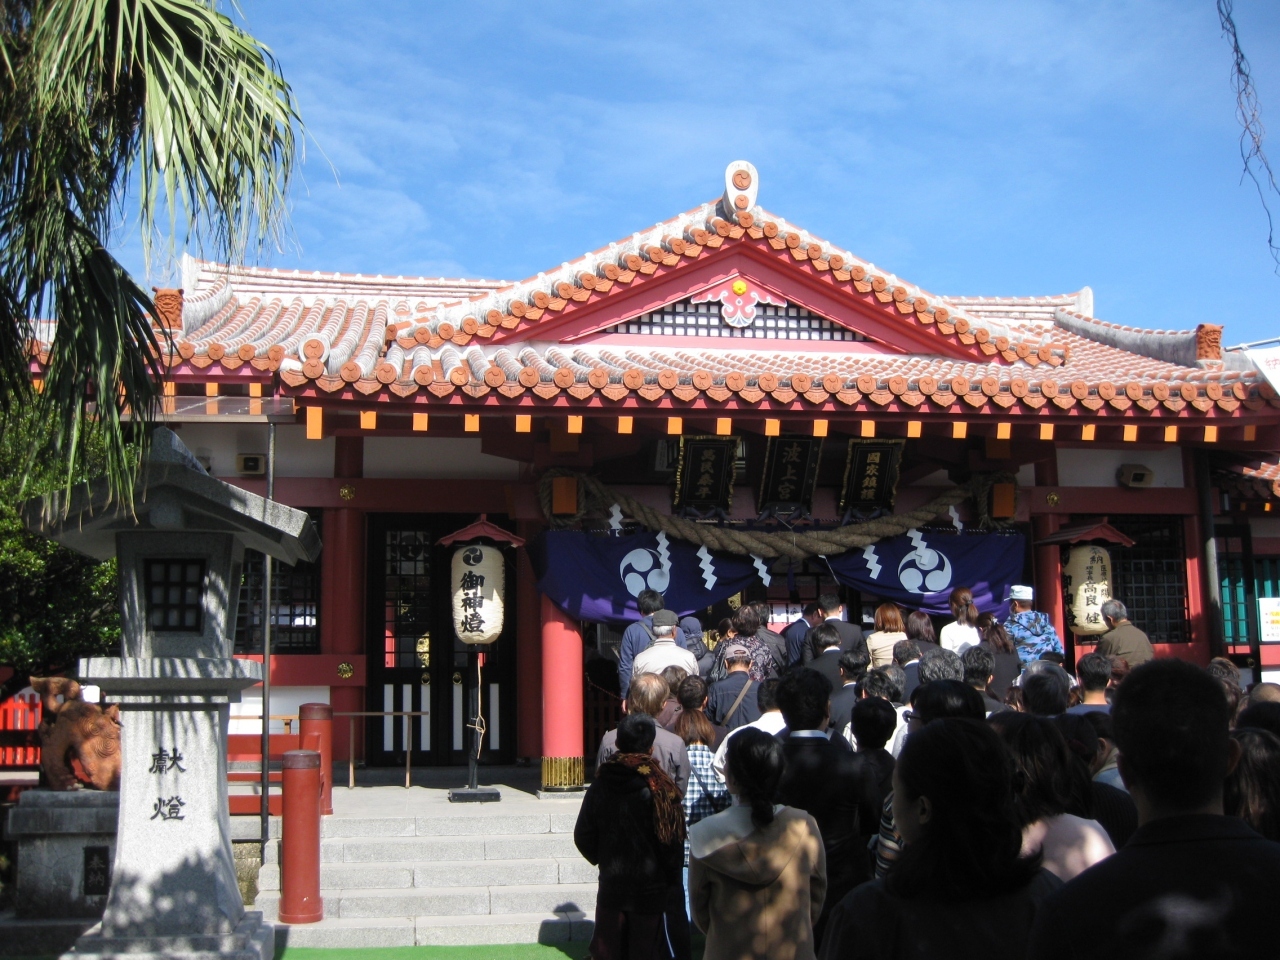 琉球八社の最上位にあるとのことで、由緒ある神社です。

本殿が非常に特徴的でした。

沖縄独特の瓦が使用されています。
